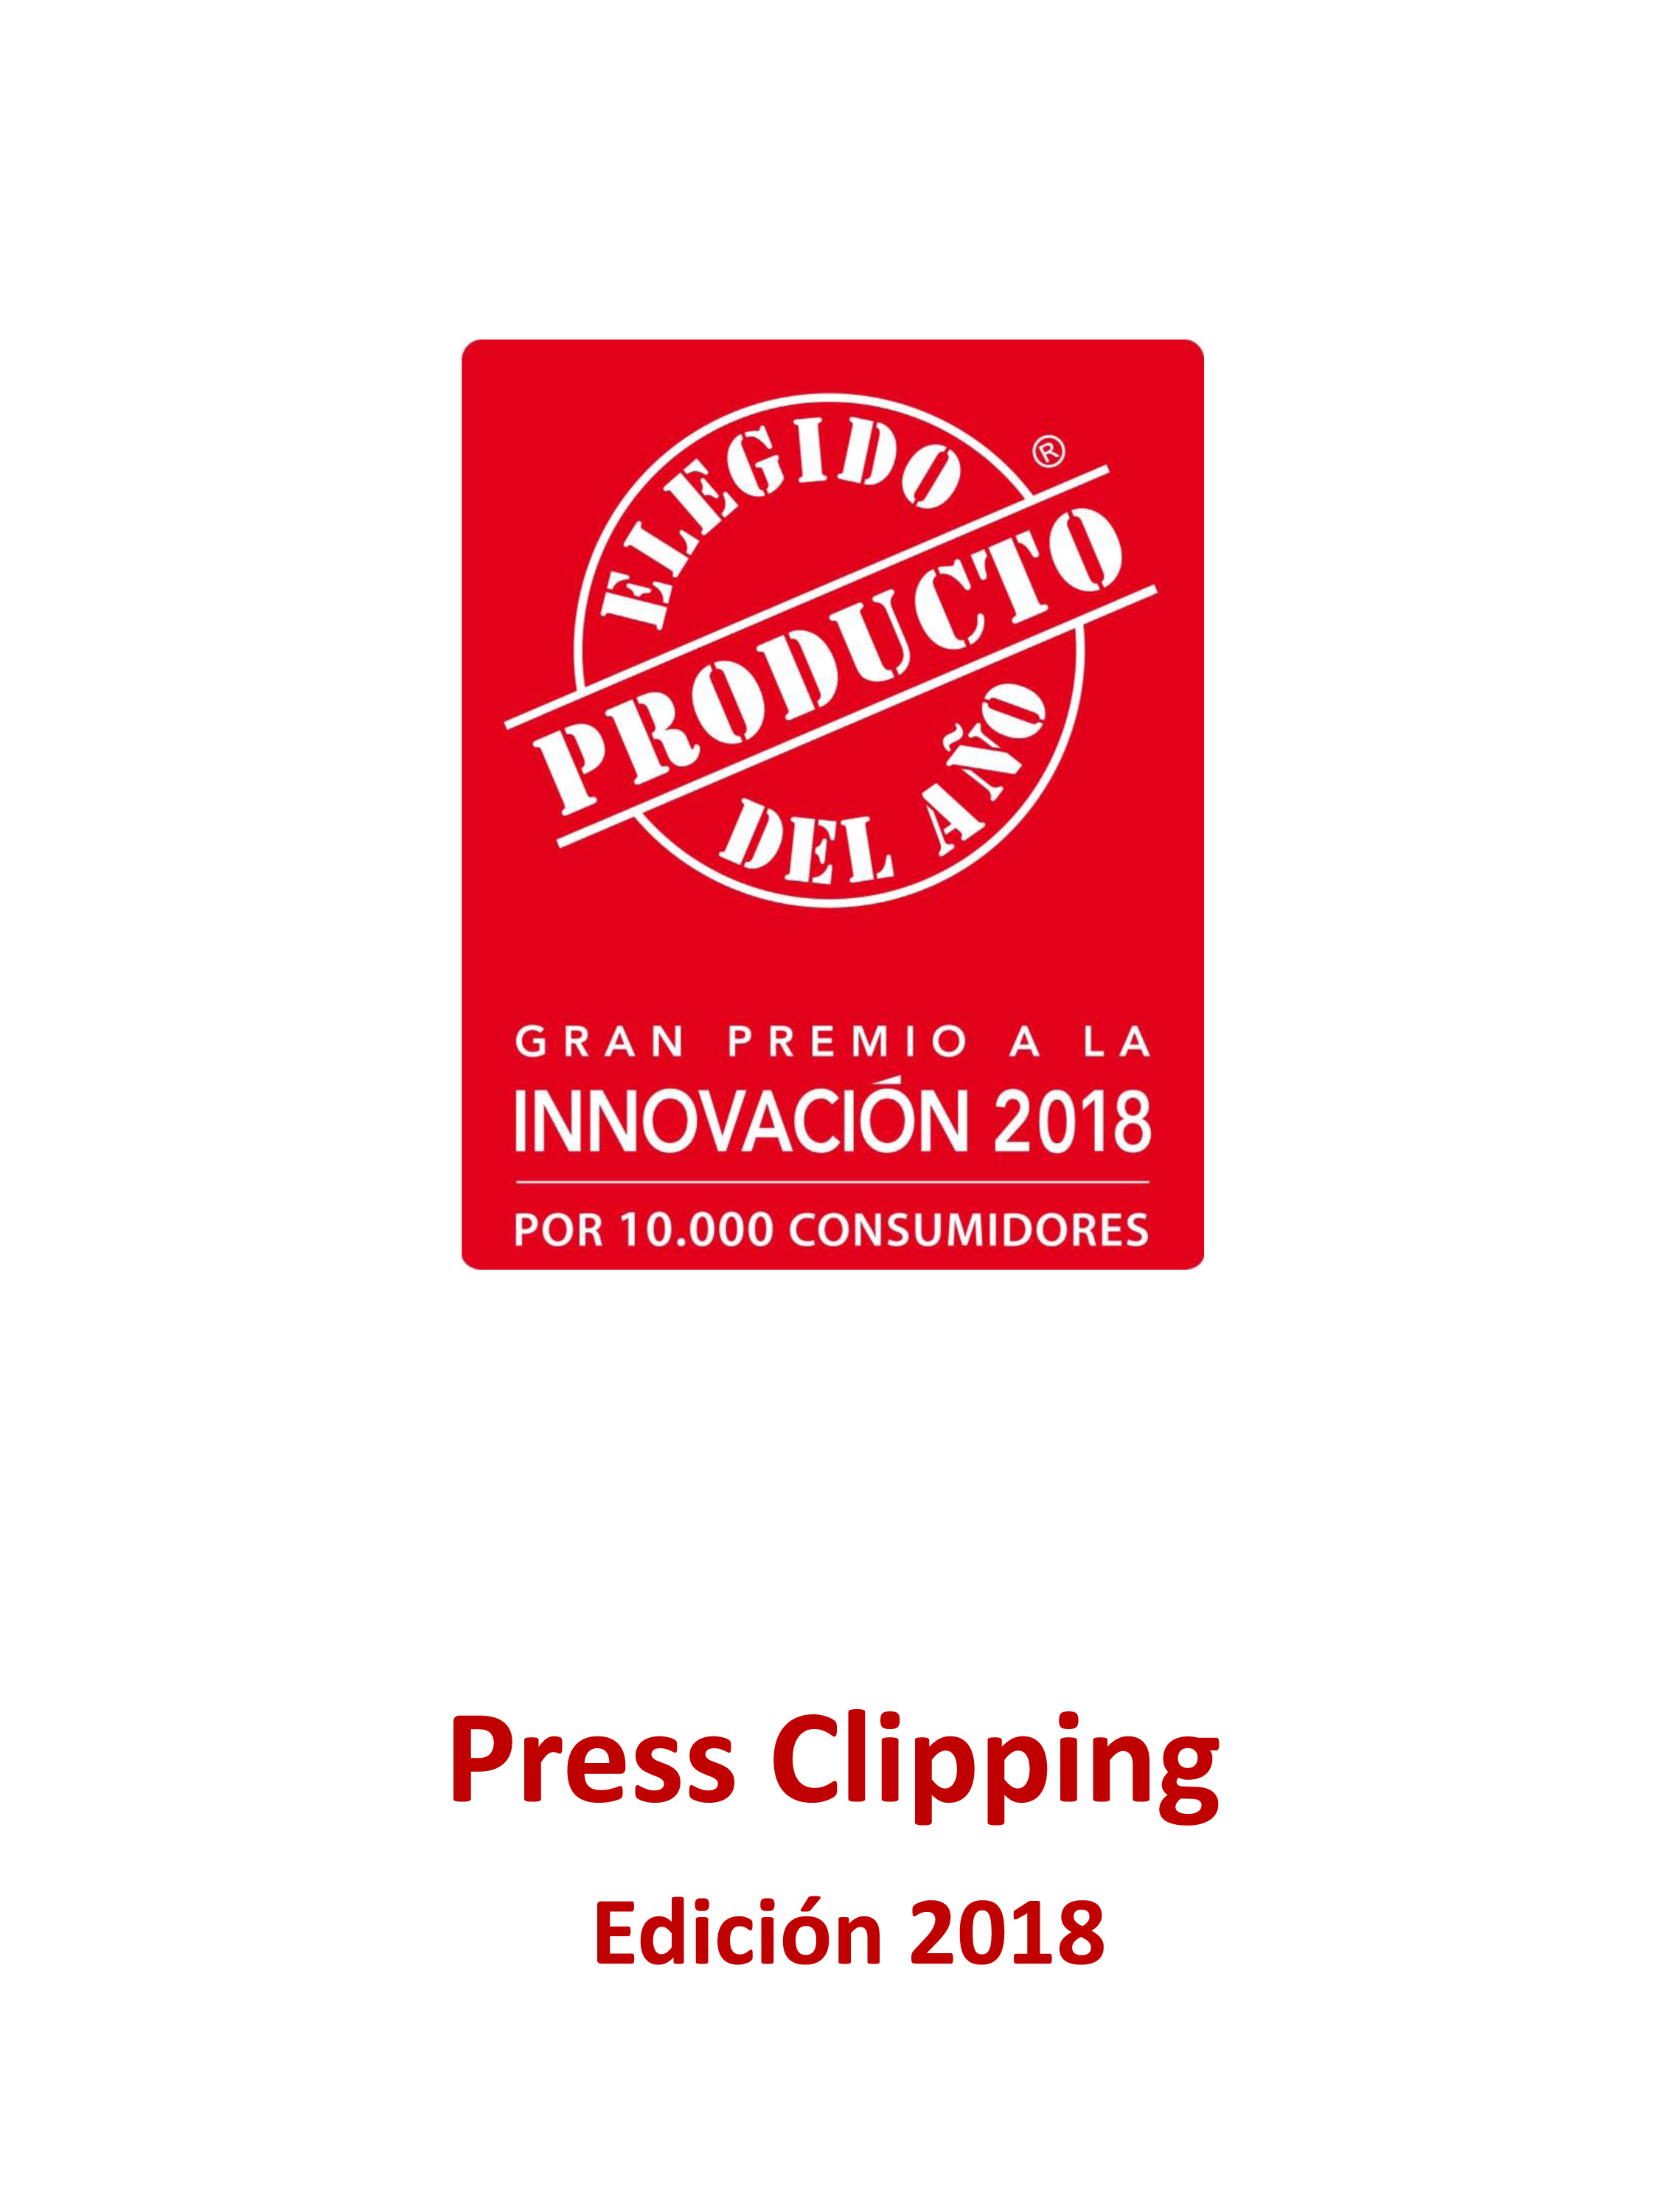 Press Clipping El Producto Del Año 2018